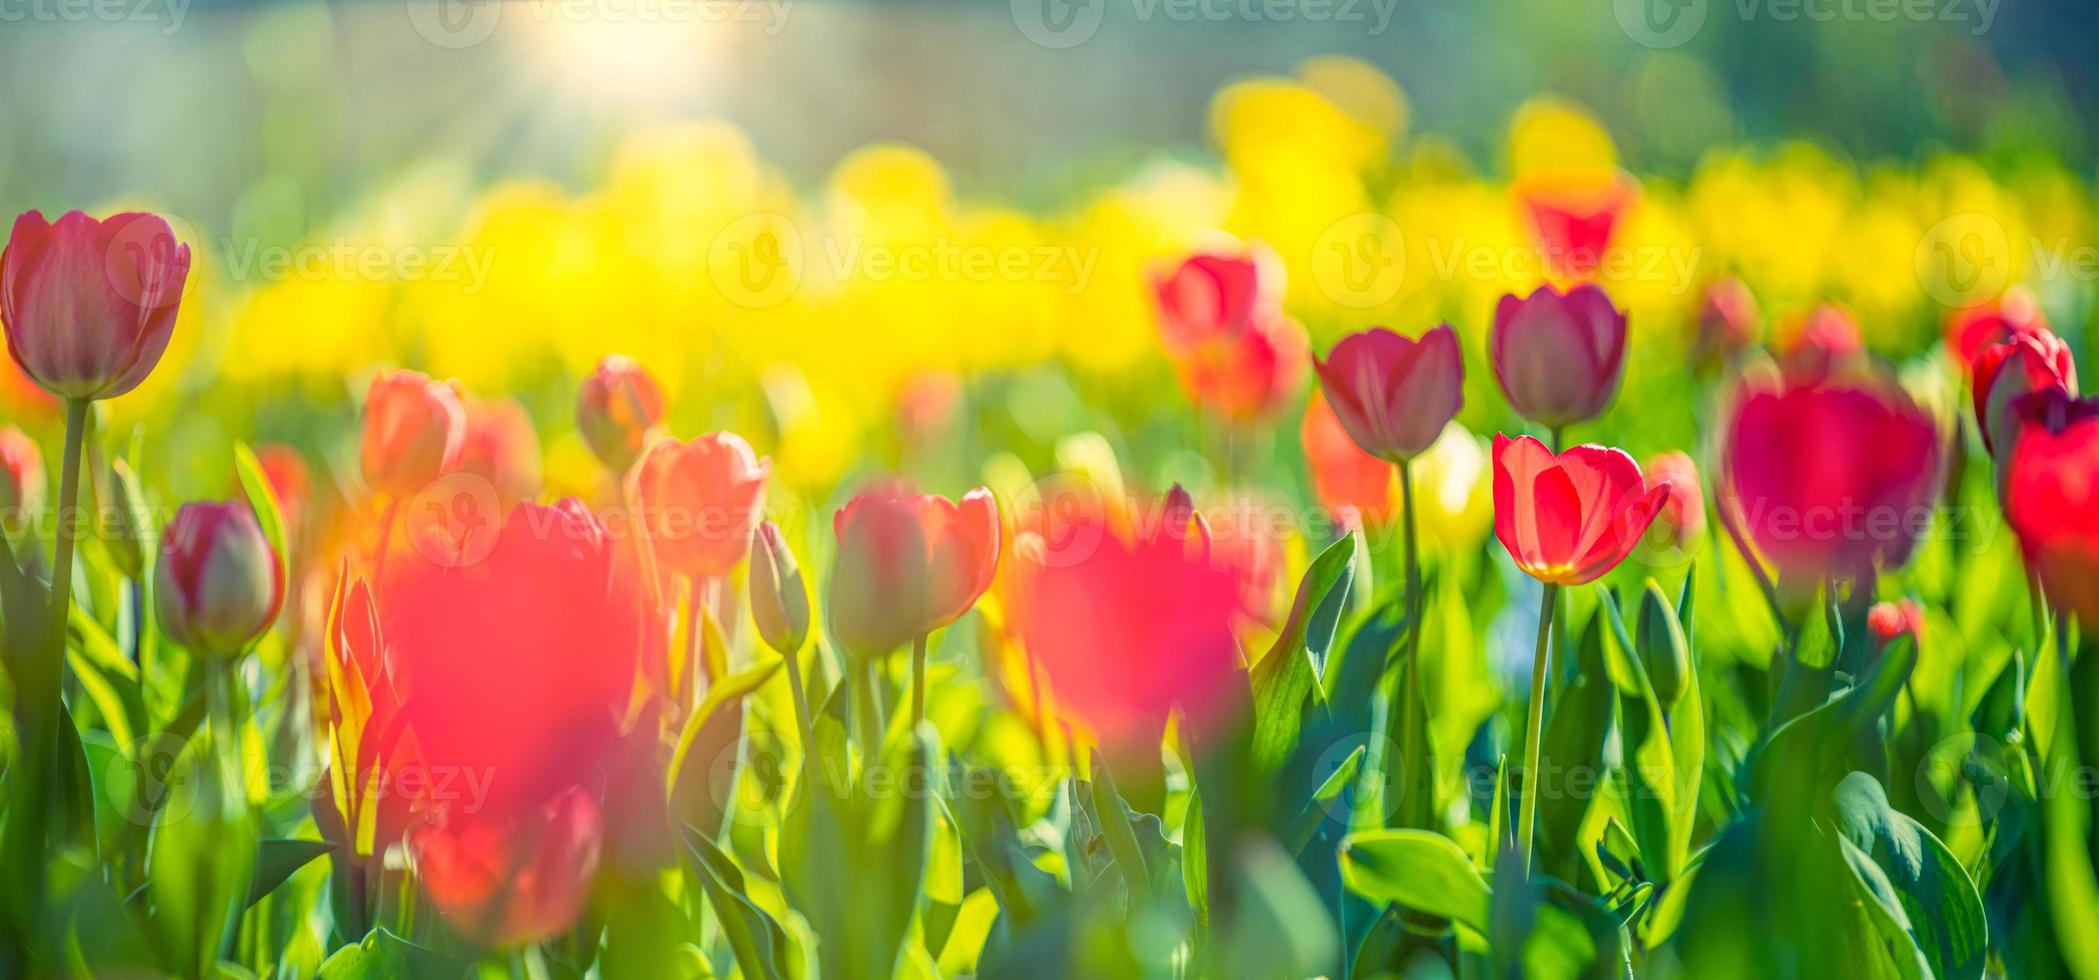 belo panorama de buquê de tulipas vermelhas brancas e rosa na natureza da primavera para design de cartão e banner web. closeup sereno, idílico romântico amor floral natureza paisagem. folhagem exuberante turva abstrata foto